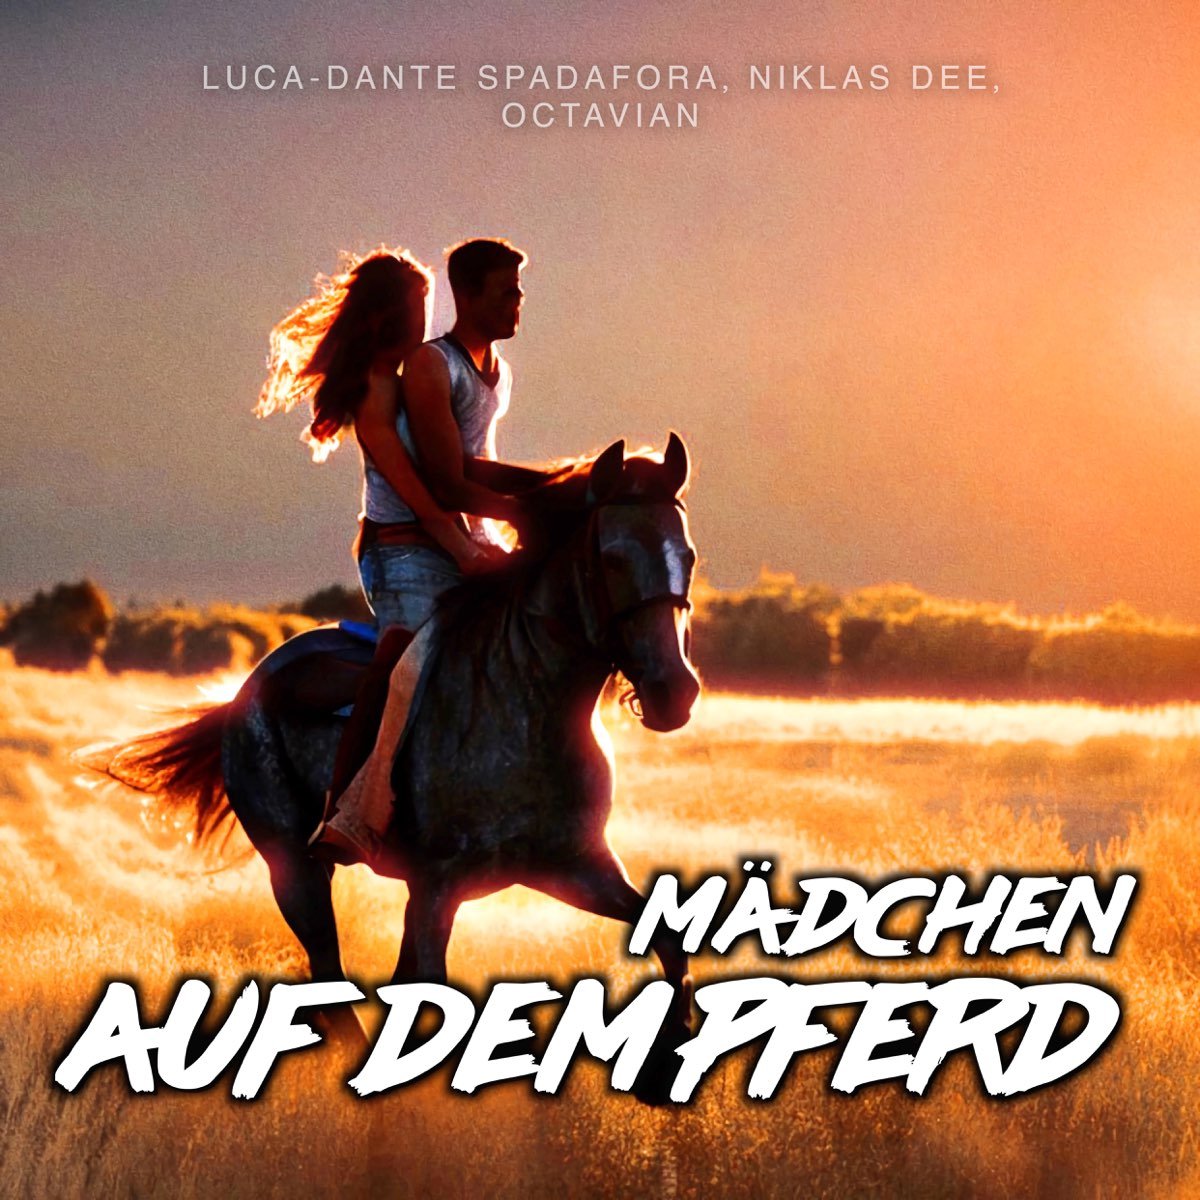 Luca-Dante Spadafora - Mädchen auf dem Pferd